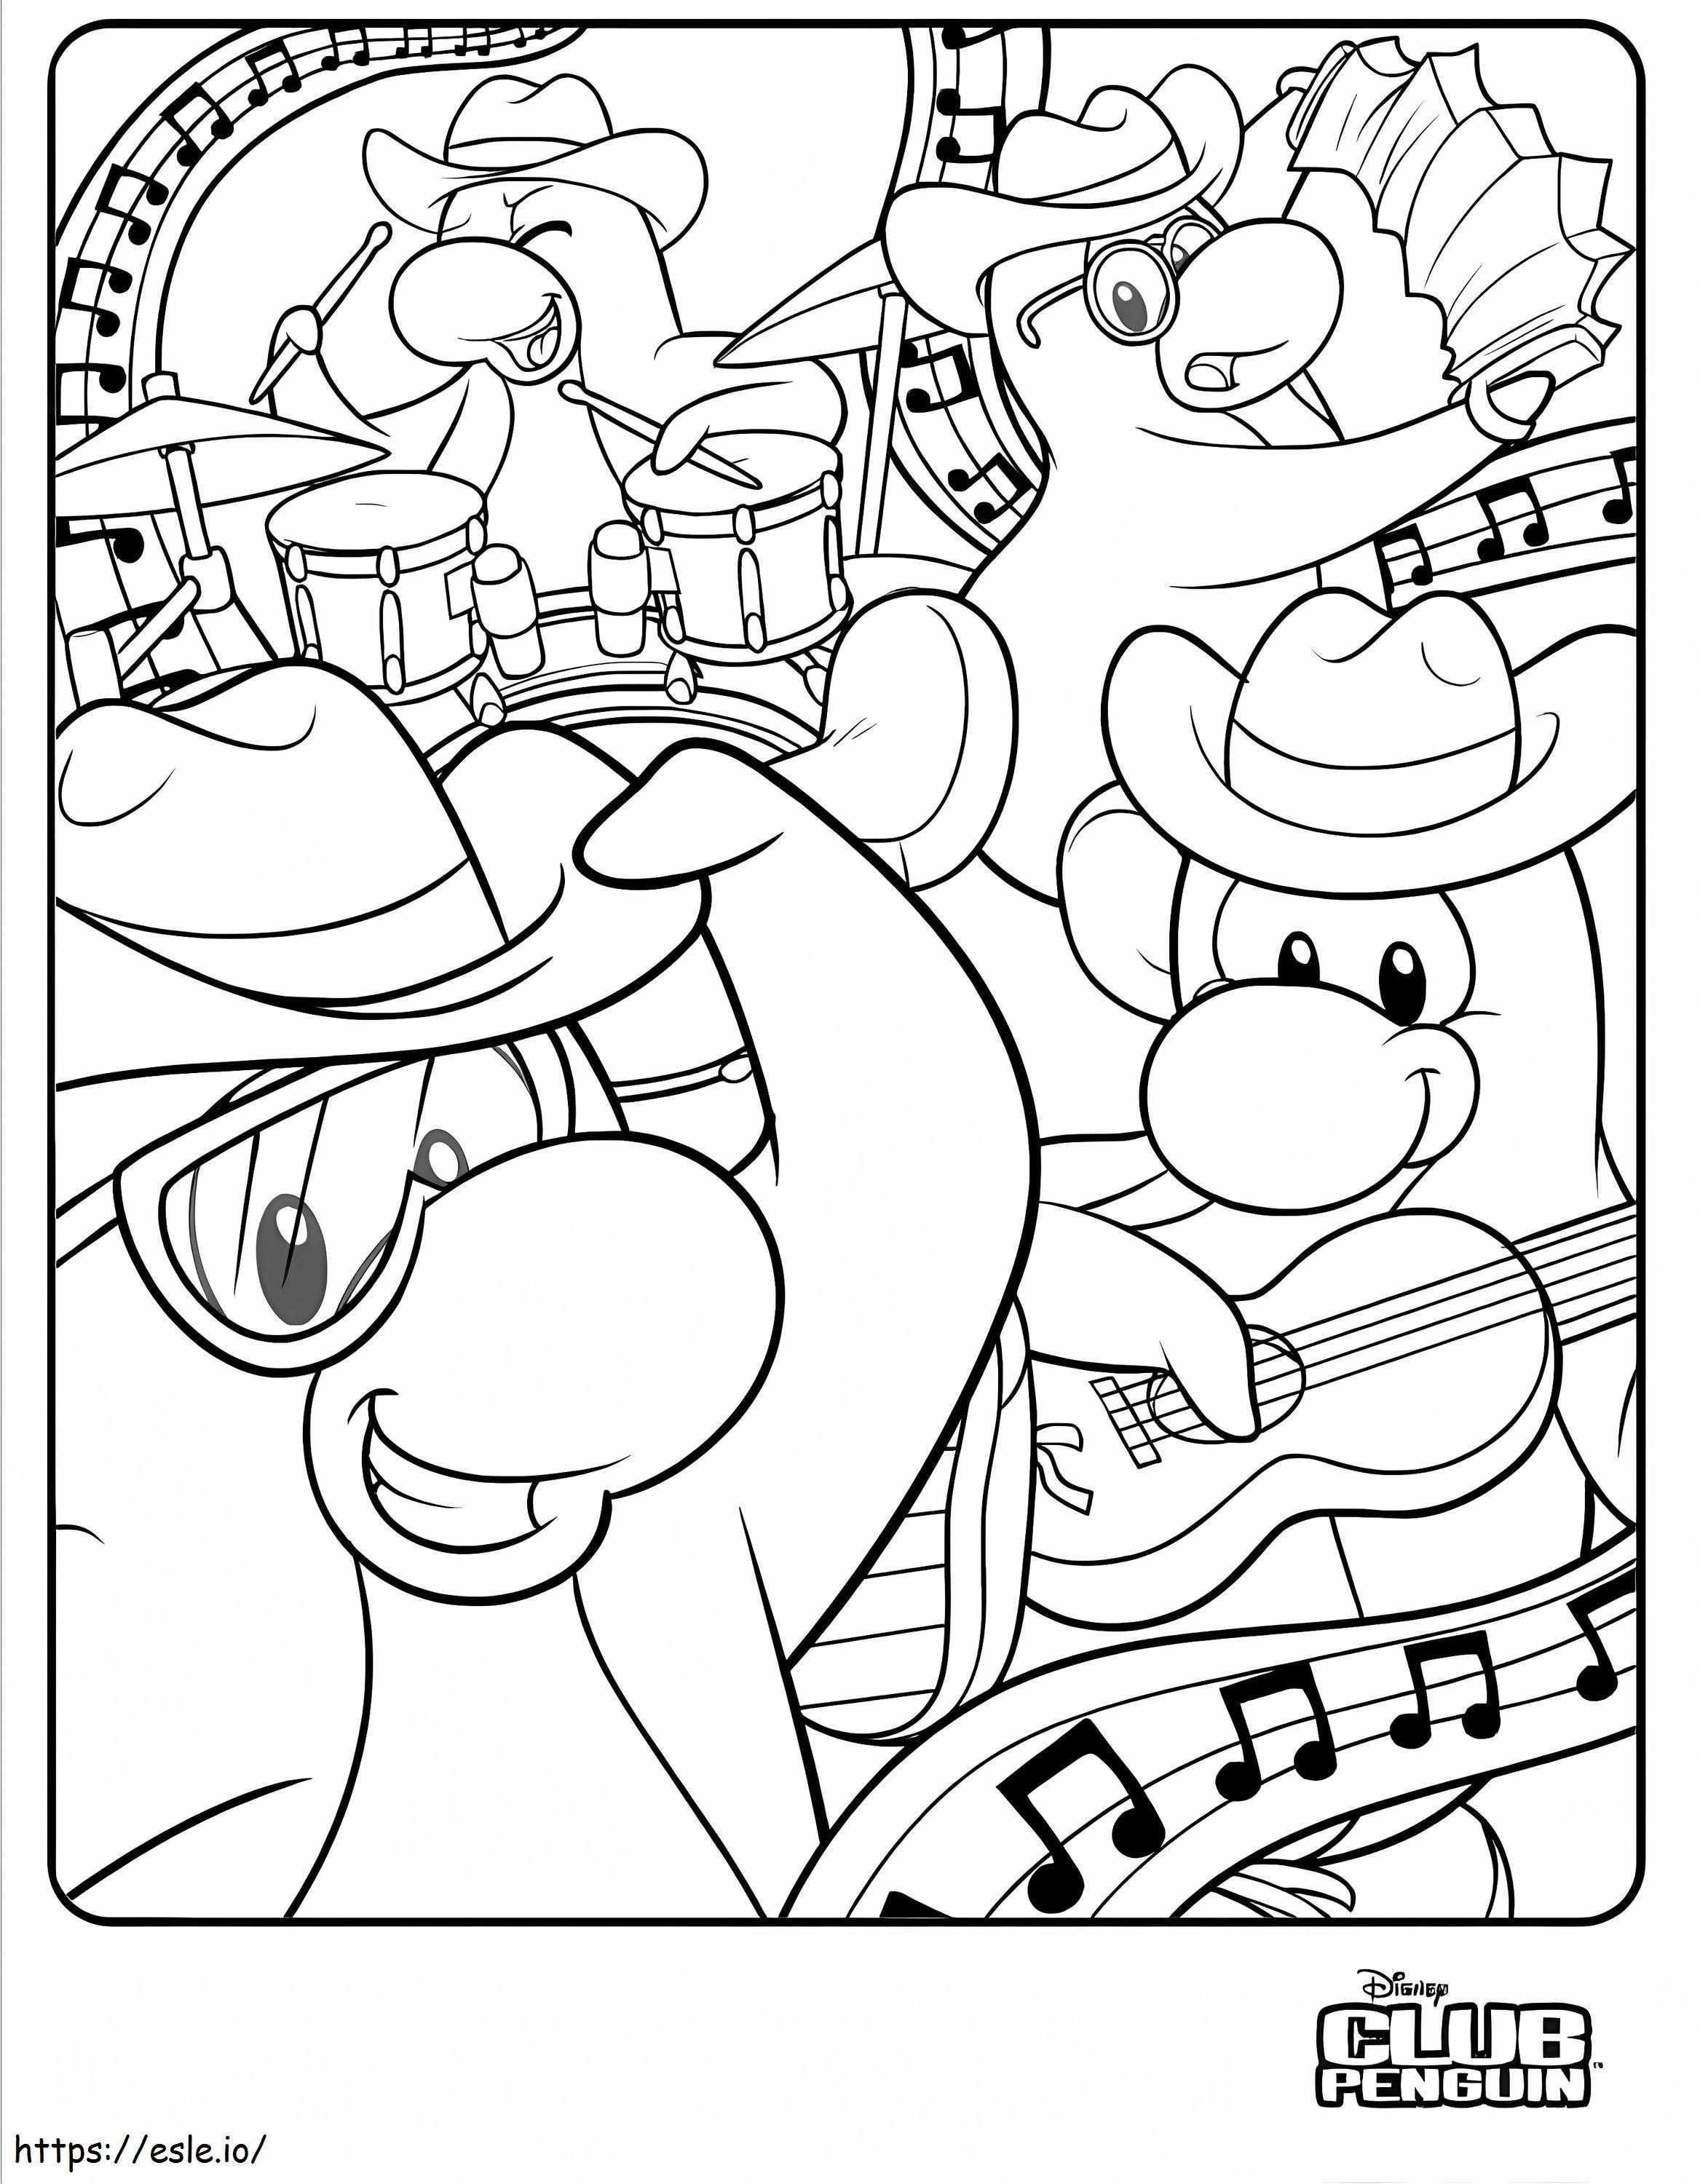 Coloriage Club Penguin Musique à imprimer dessin